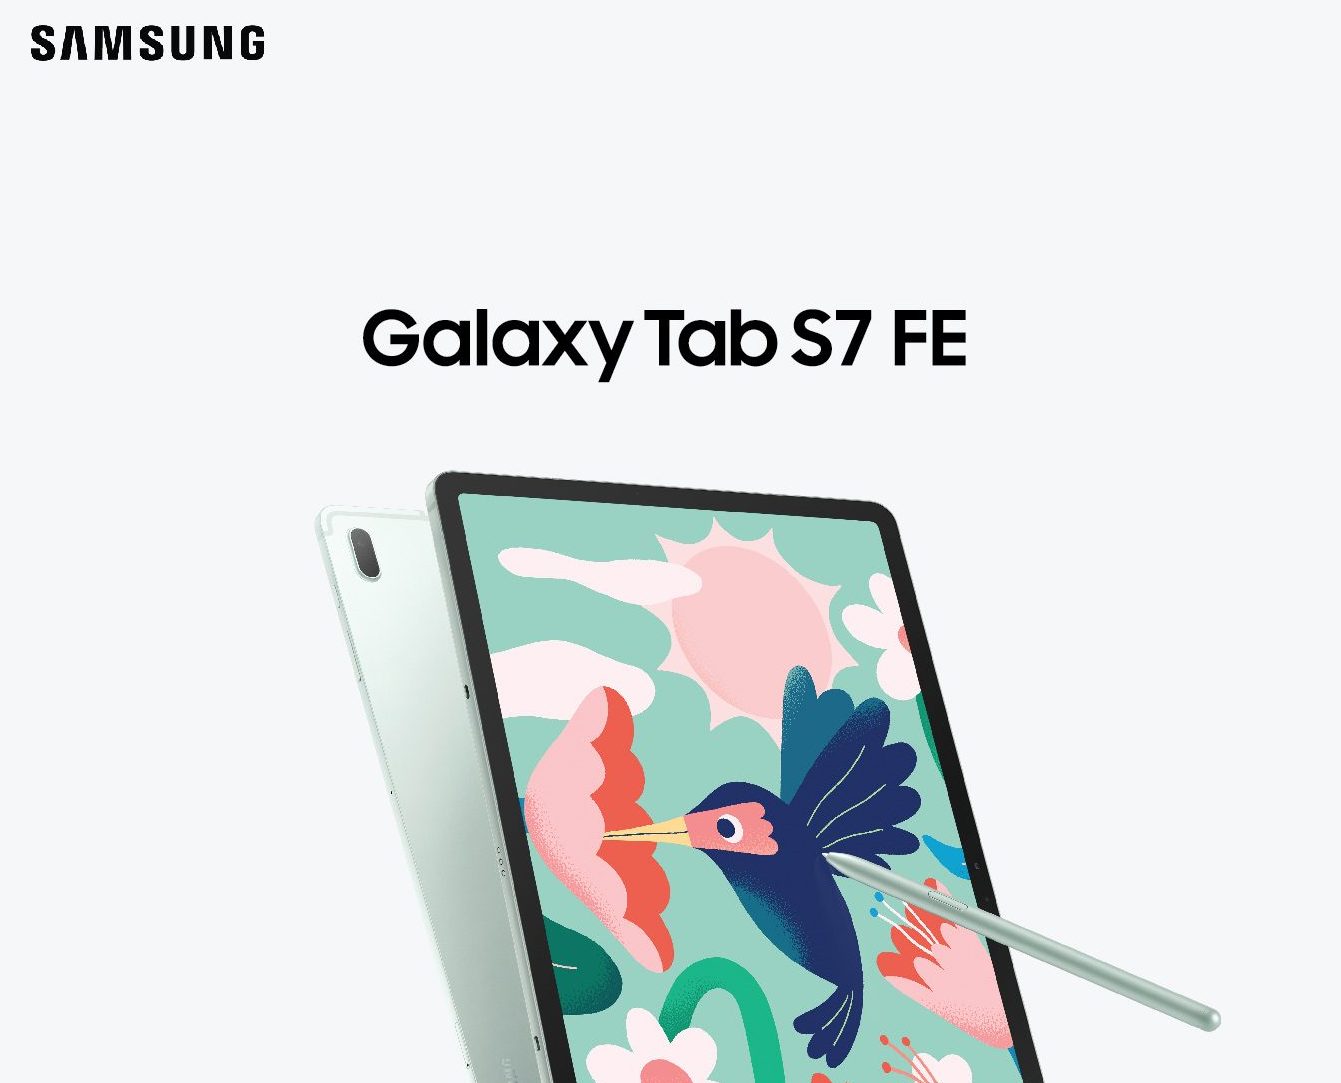 Samsung Galaxy Tab S7 FE chính thức lên kệ tại Việt Nam